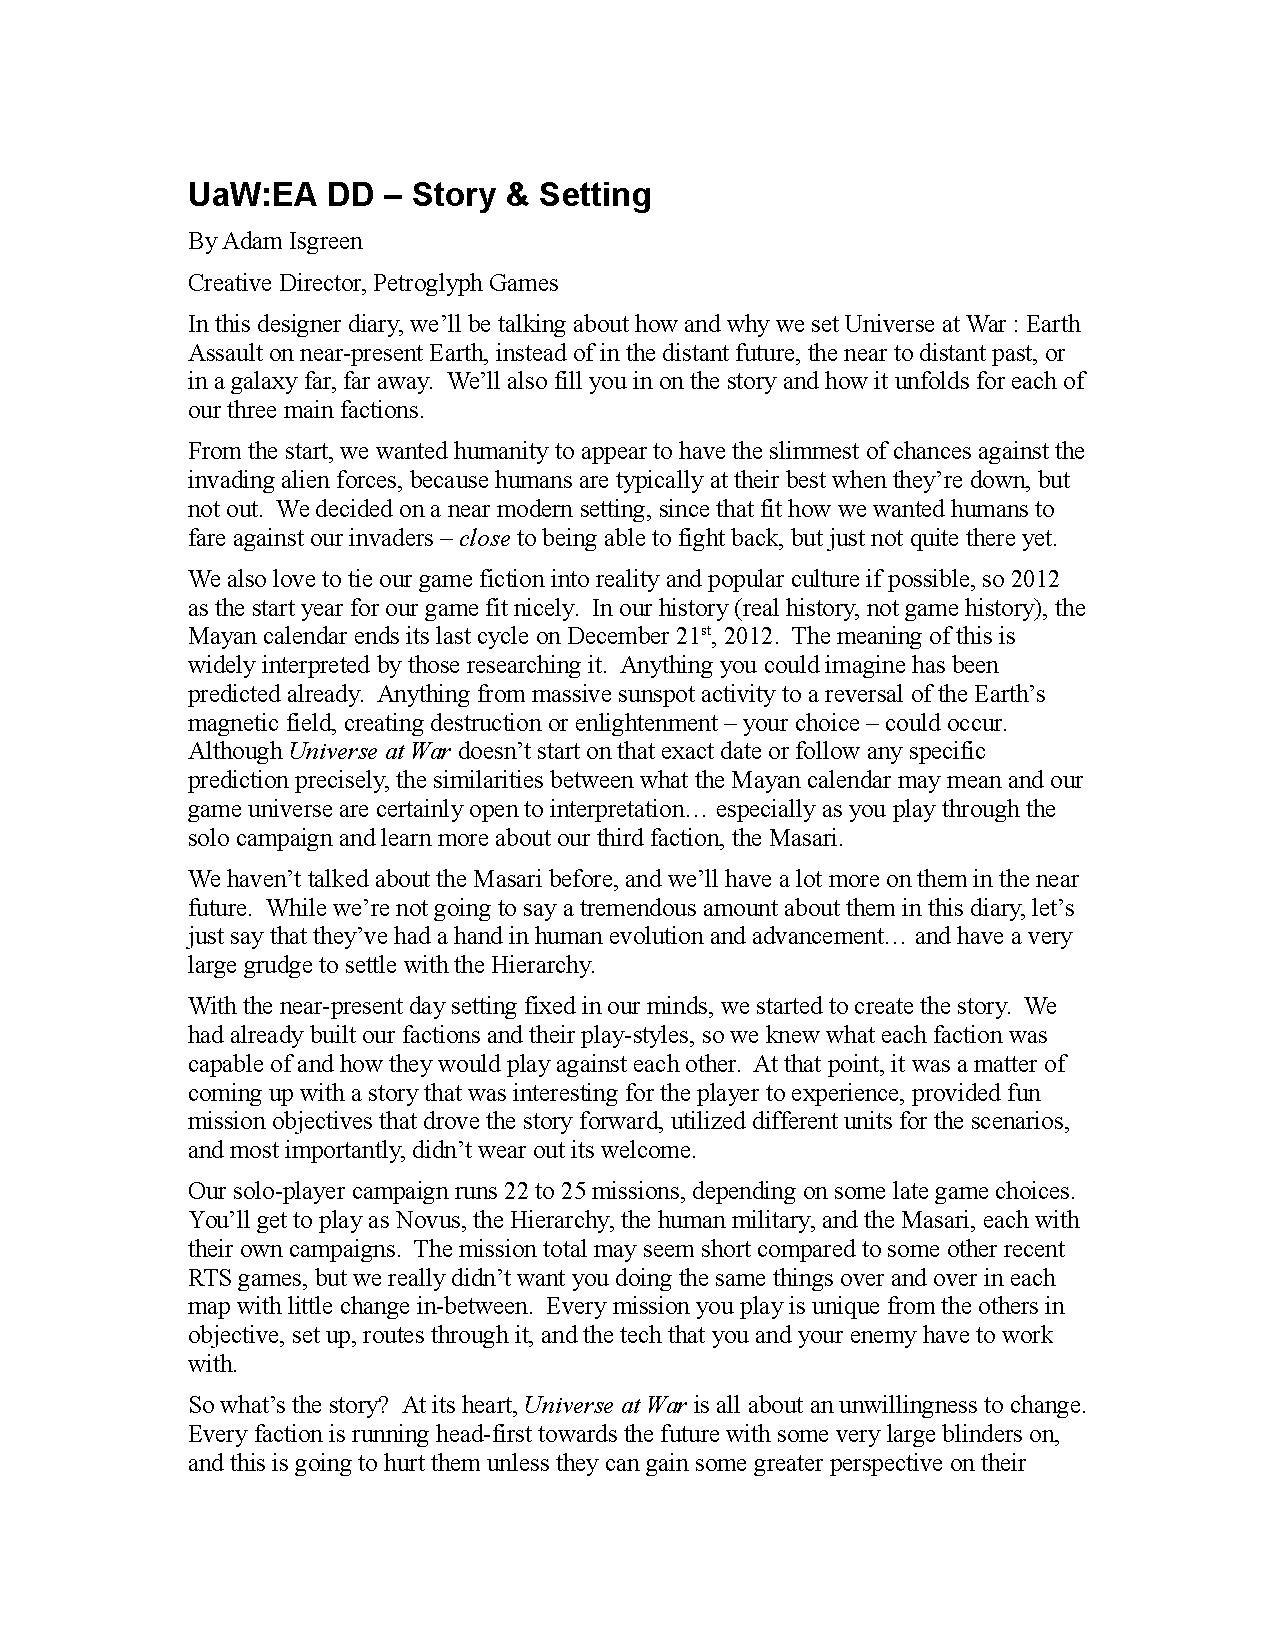 UaW DD - Setting Story.pdf